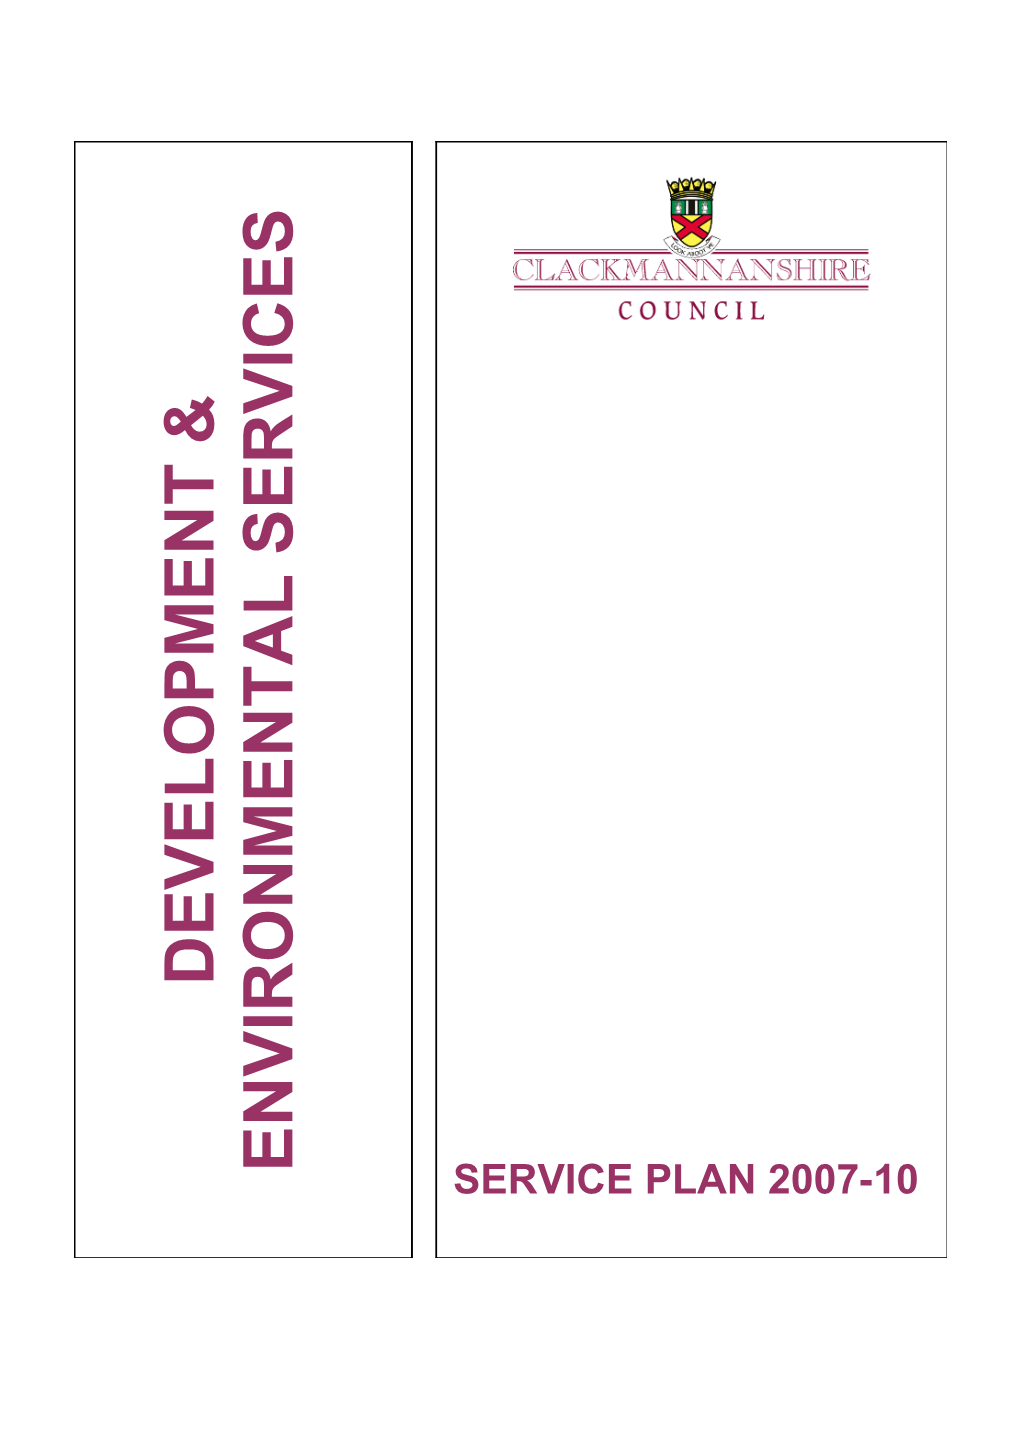 D&ES Service Plan 2007-10